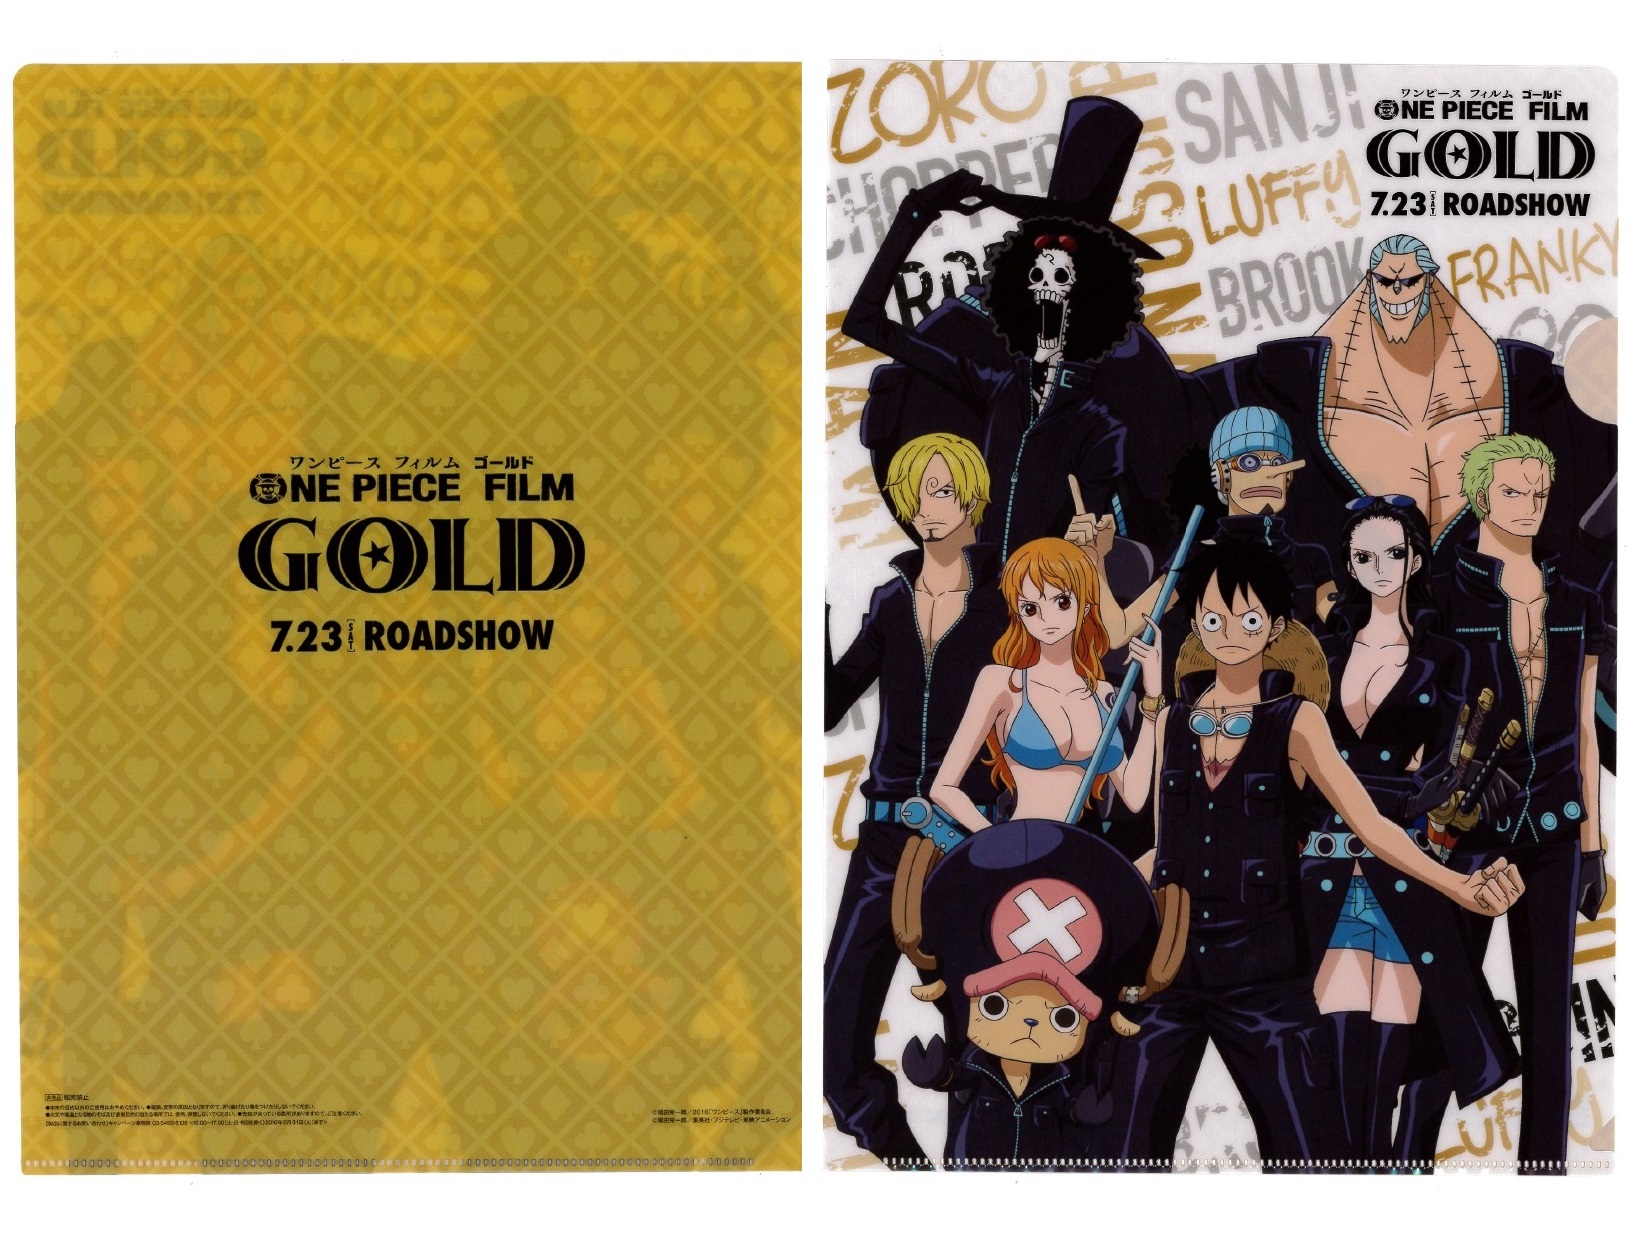 おまけカオスな日々 セブンイレブン ワンピース One Piece Film Gold クリアファイル プレゼント